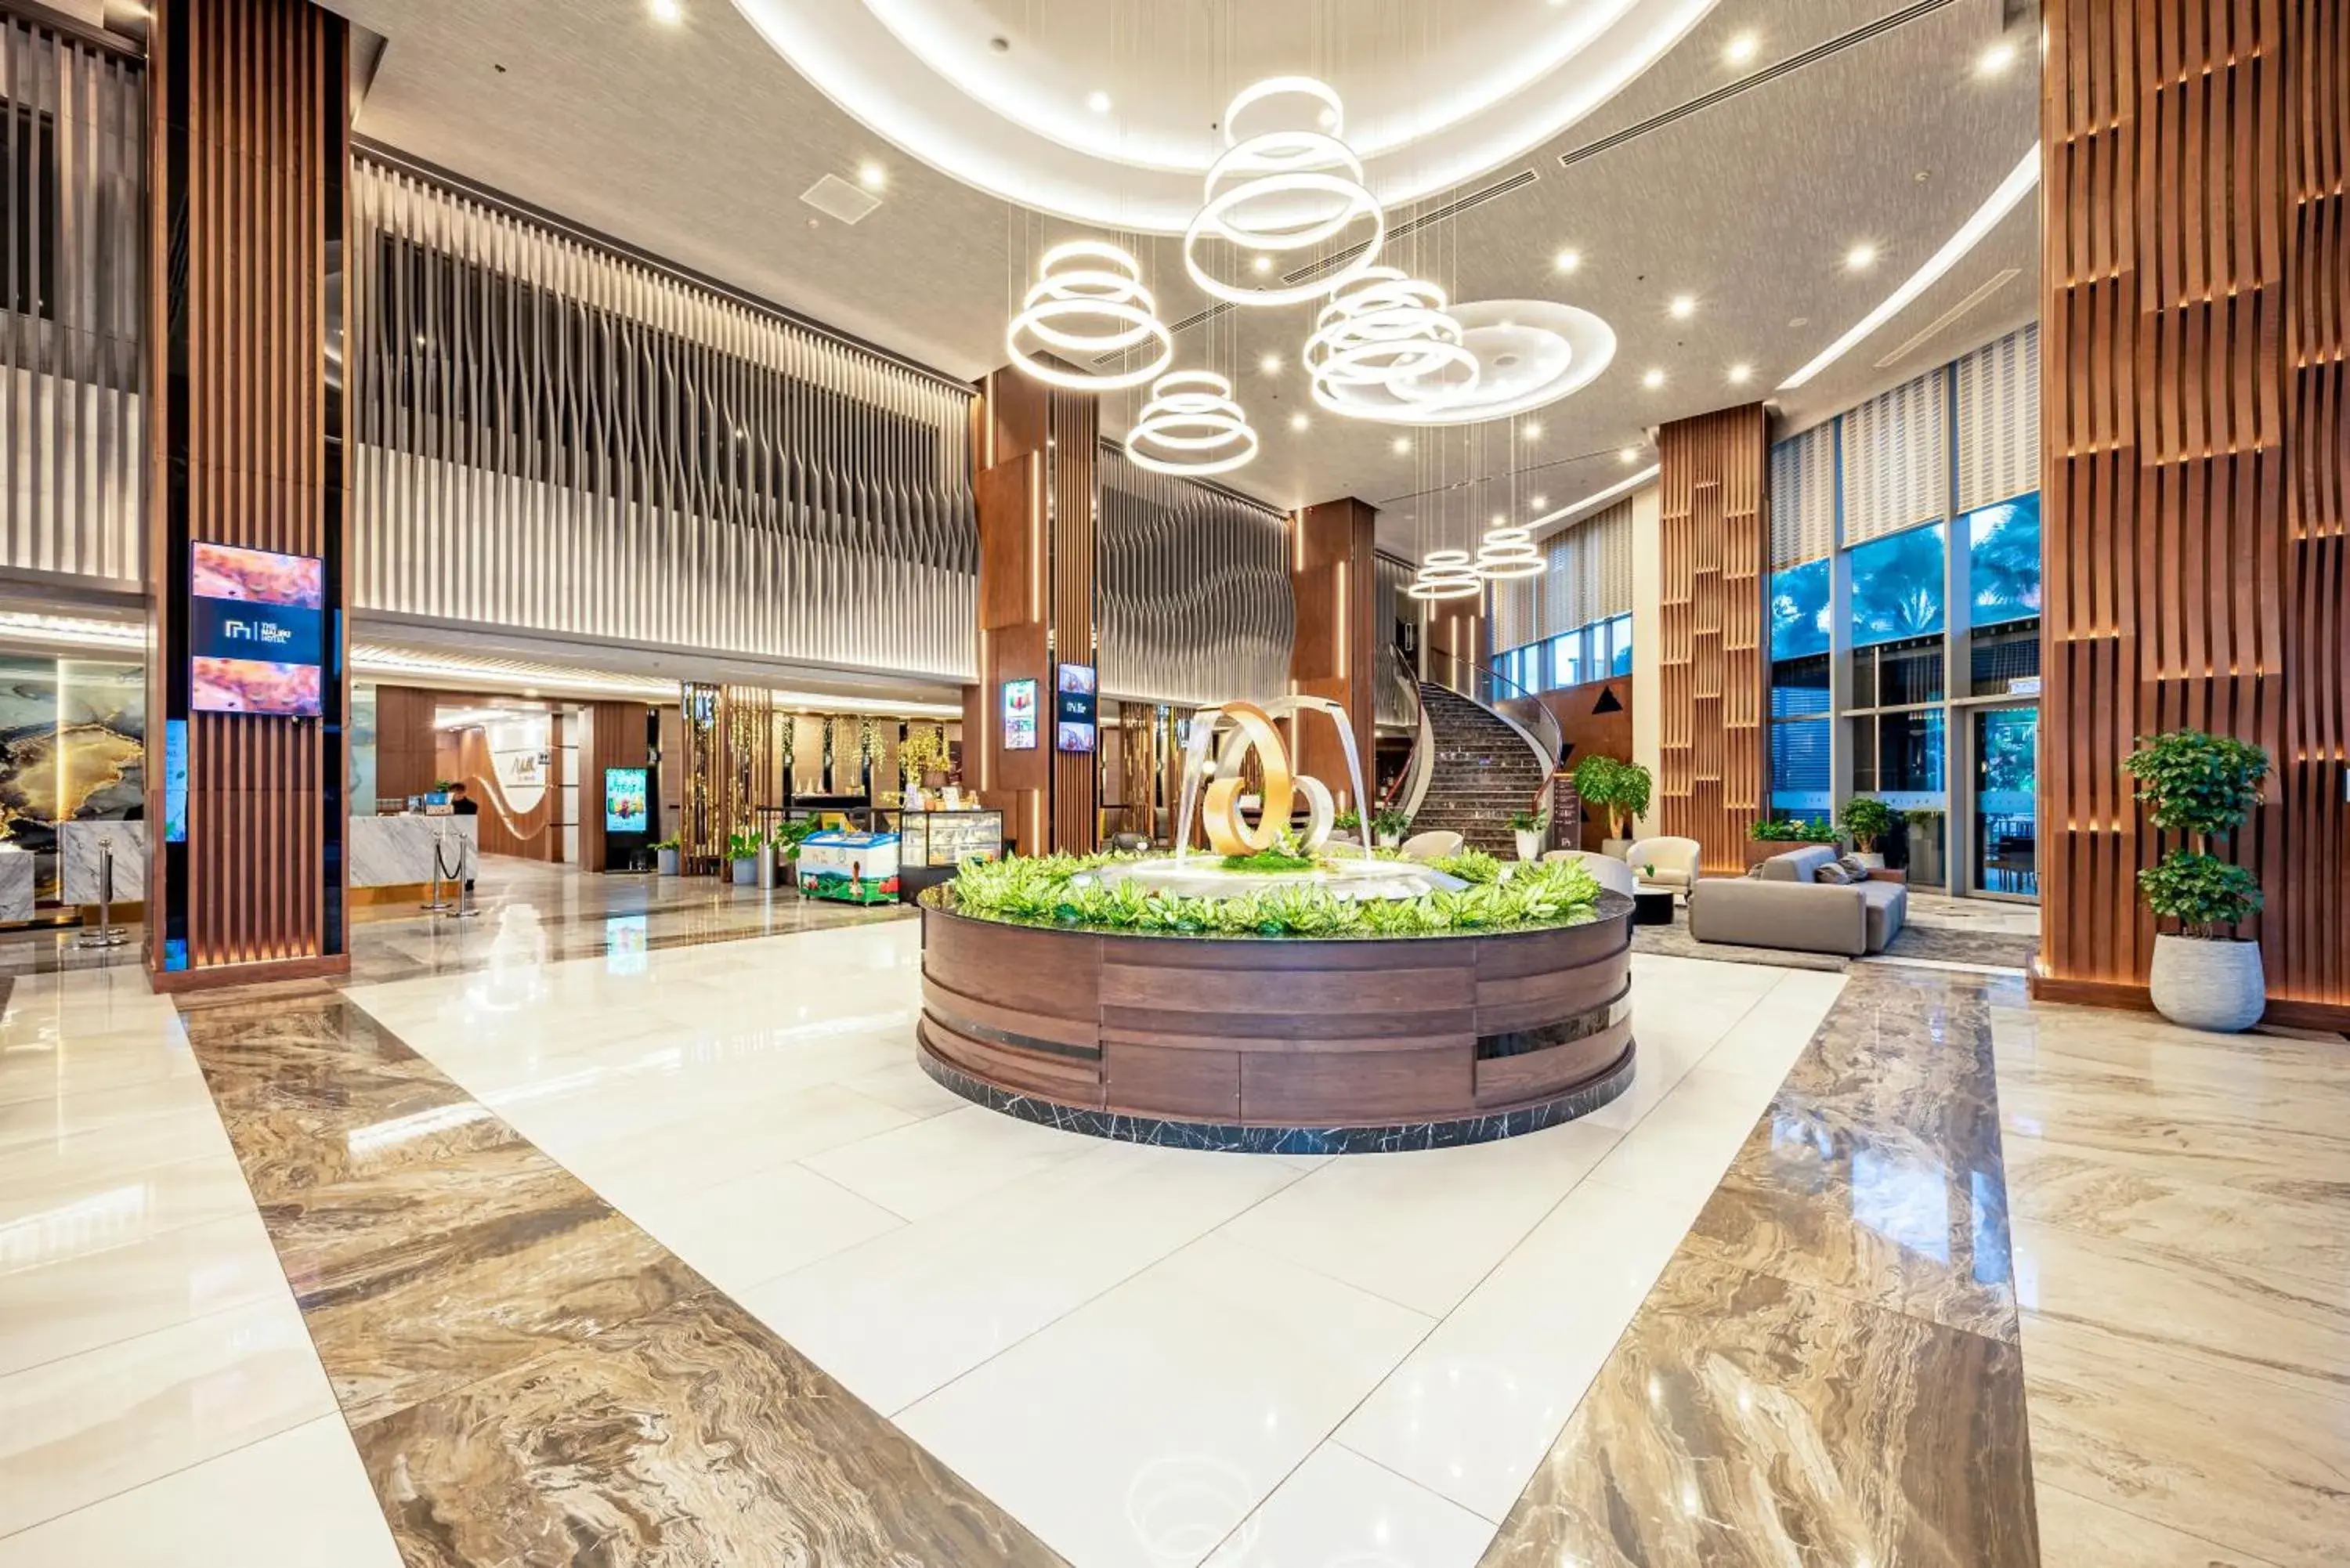 Lobby or reception in Malibu Hotel